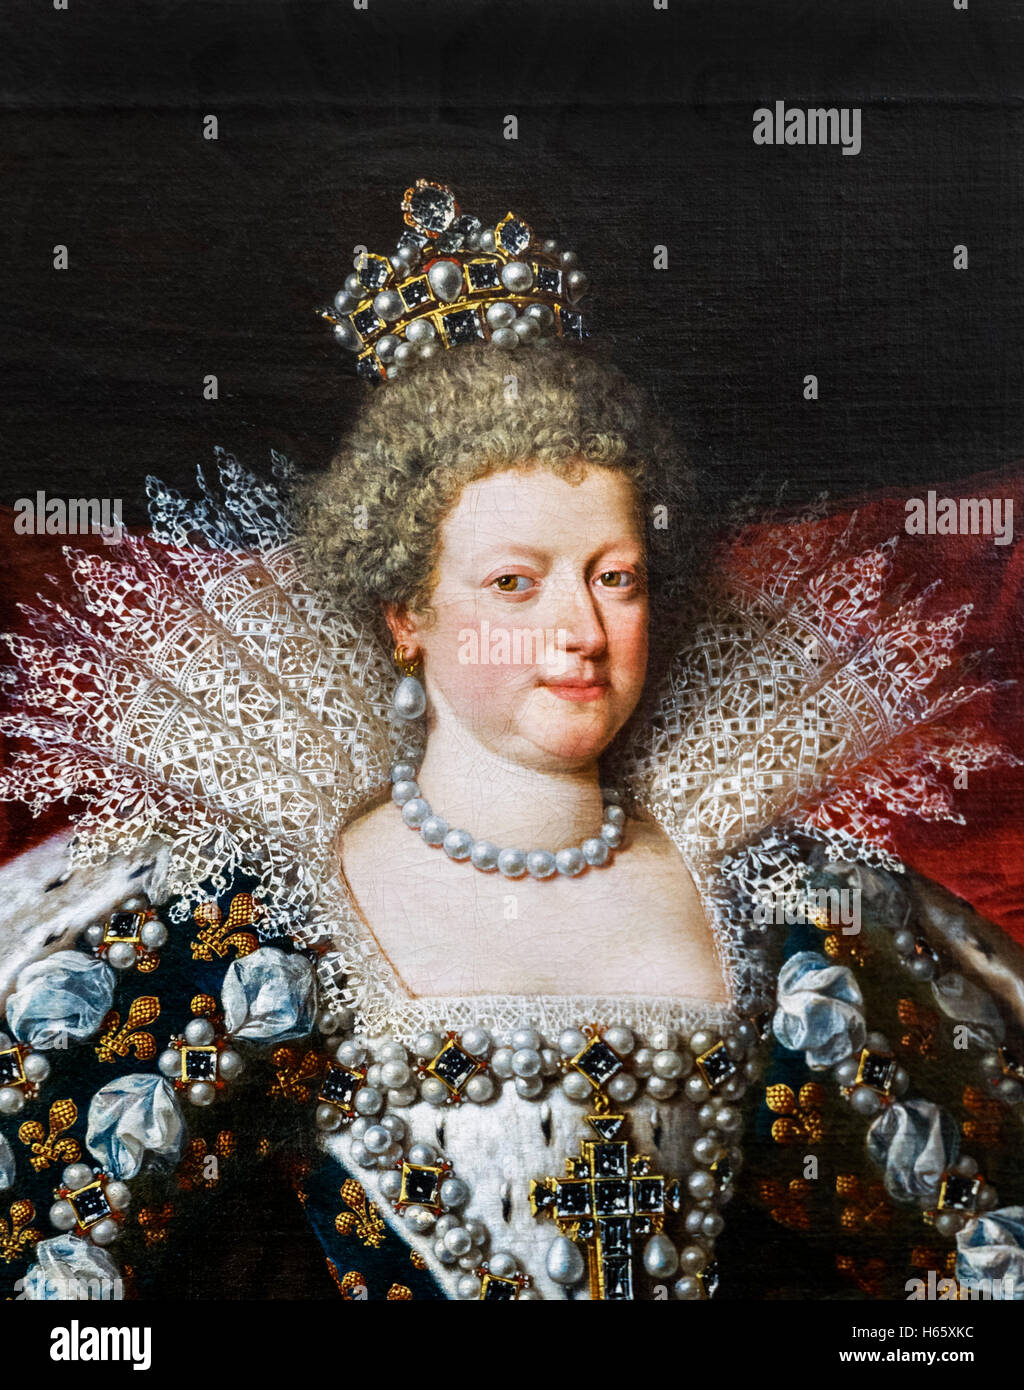 Marie de' Medici (Marie de Médicis: 1575-1642) war Königin von Frankreich als die zweite Frau von König Henry IV von Frankreich. Porträt c.1609-10 von Franz Pourbus dem jüngeren. Dies ist ein Detail eines größeren Bildes, H65XK2 Stockfoto